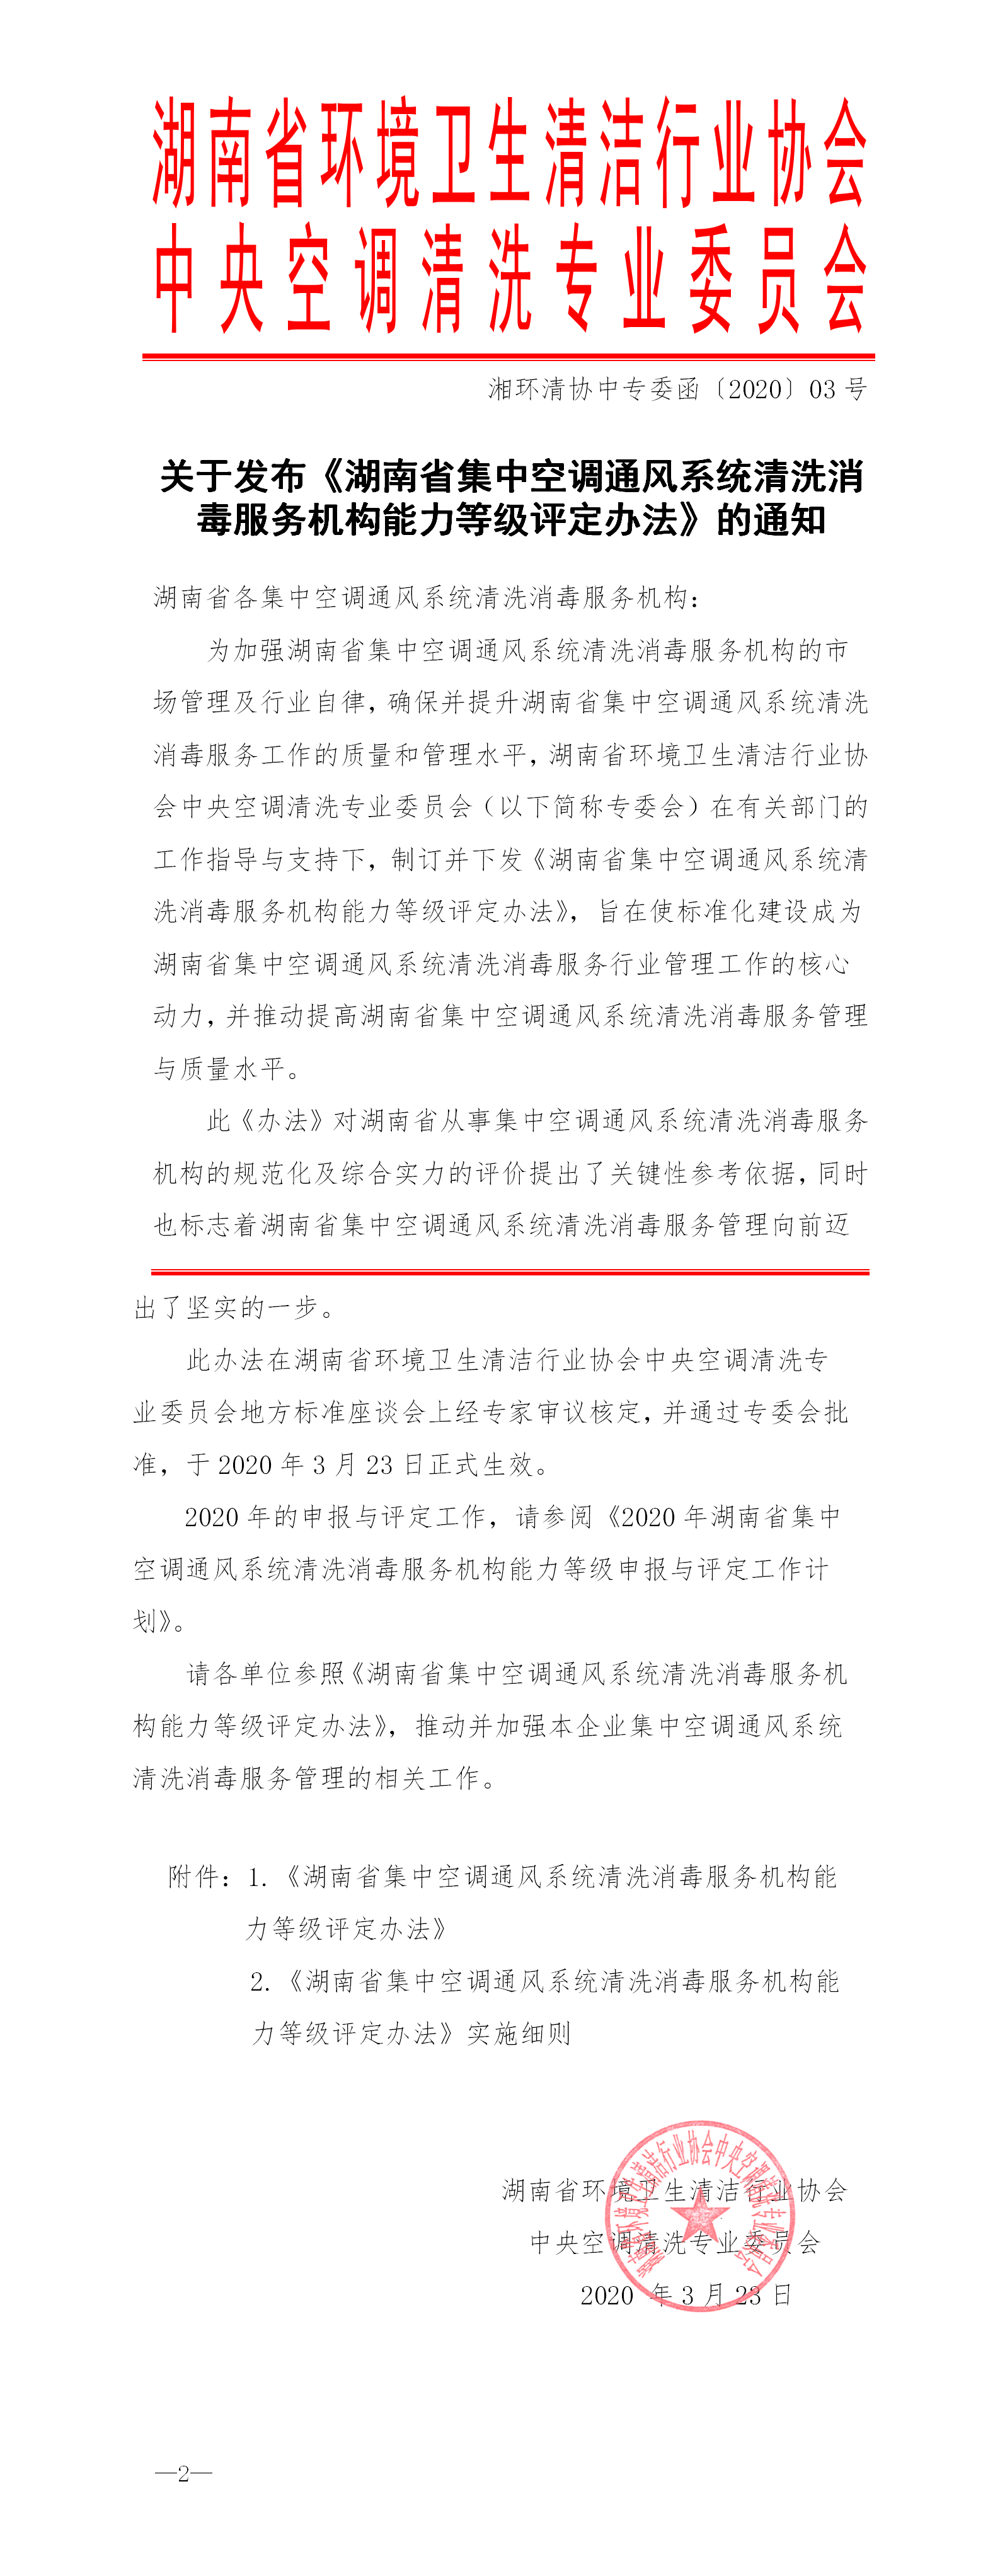 01关于发布《湖南省集中空调通风系统清洗消毒服务机构能力等级评定办法》的通知.png